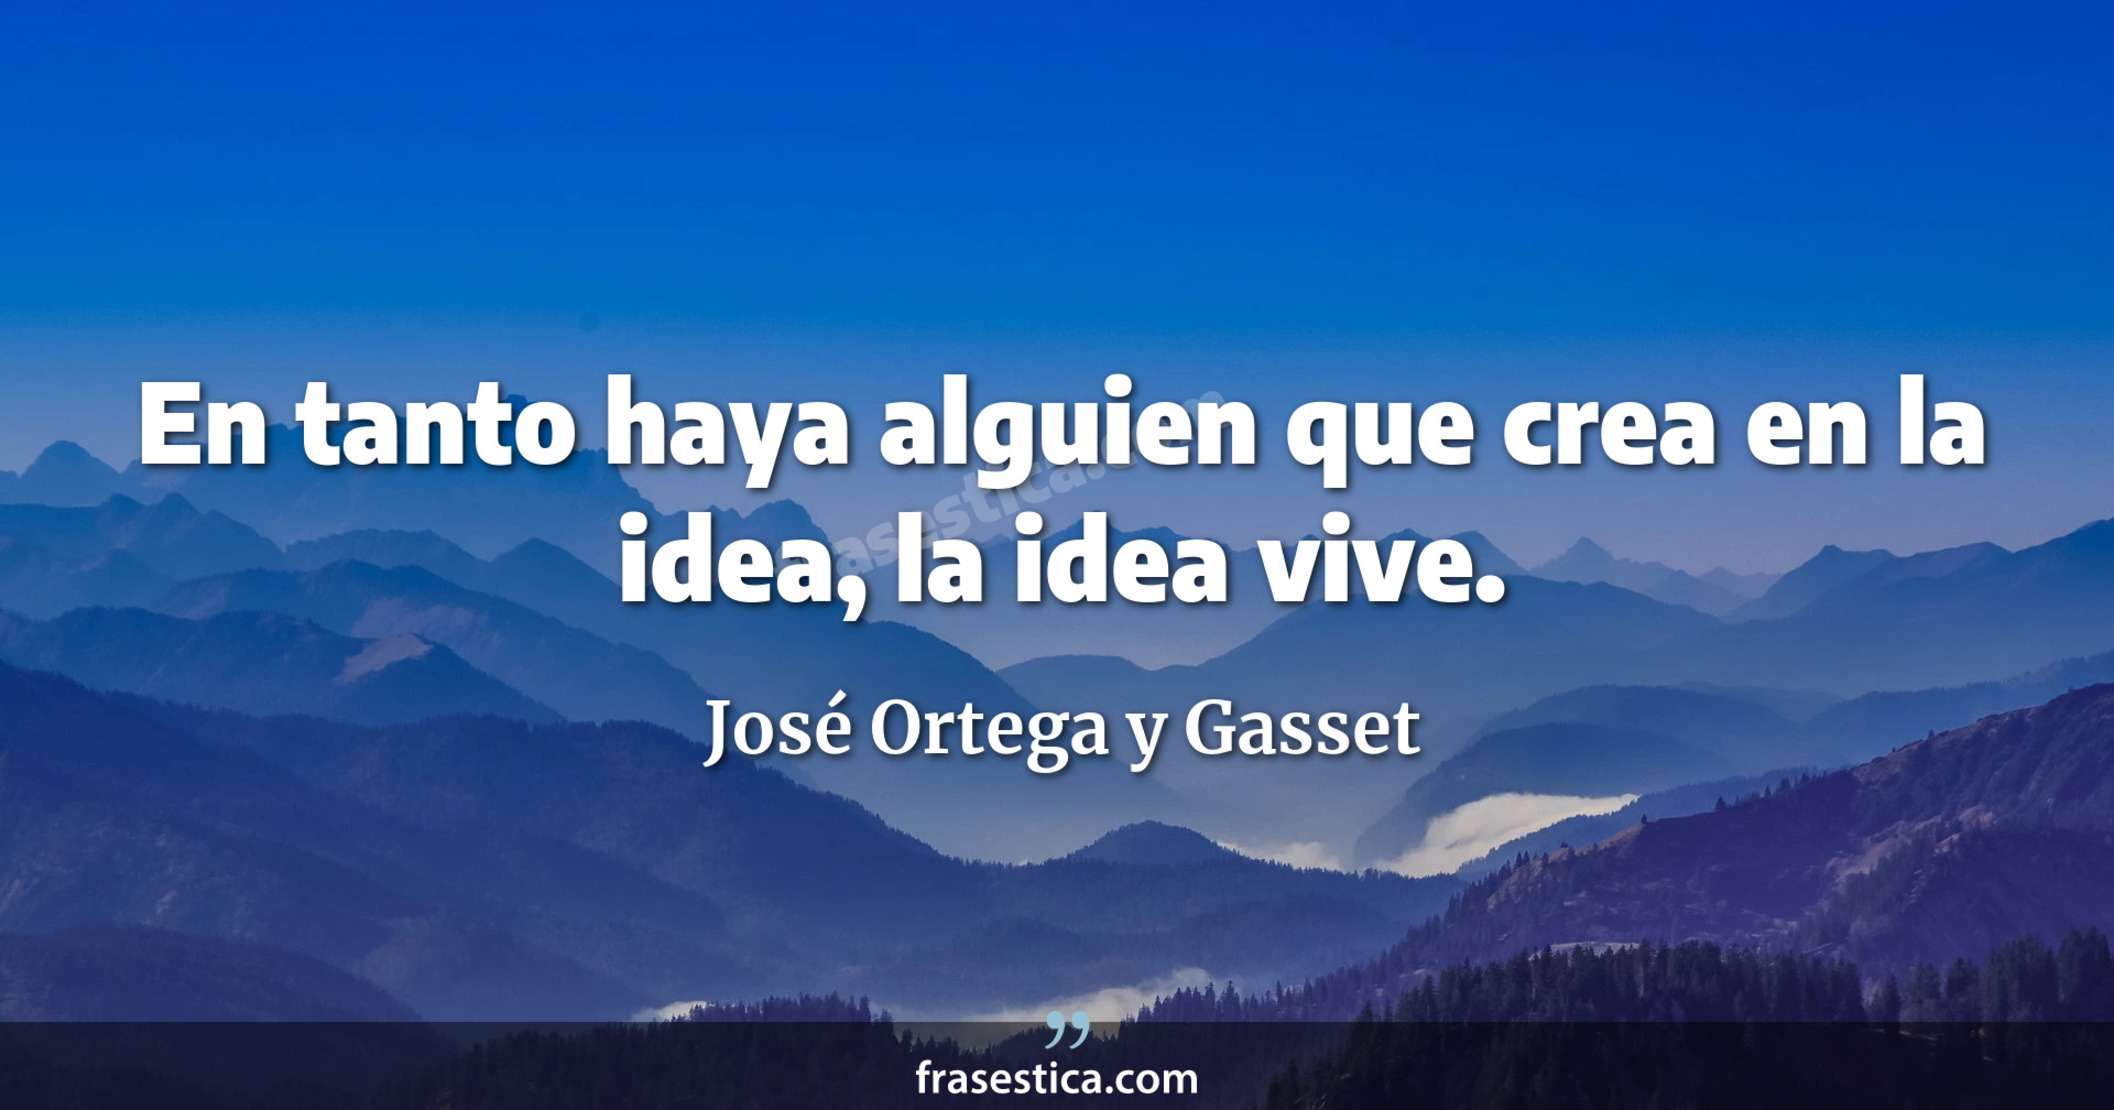 En tanto haya alguien que crea en la idea, la idea vive. - José Ortega y Gasset